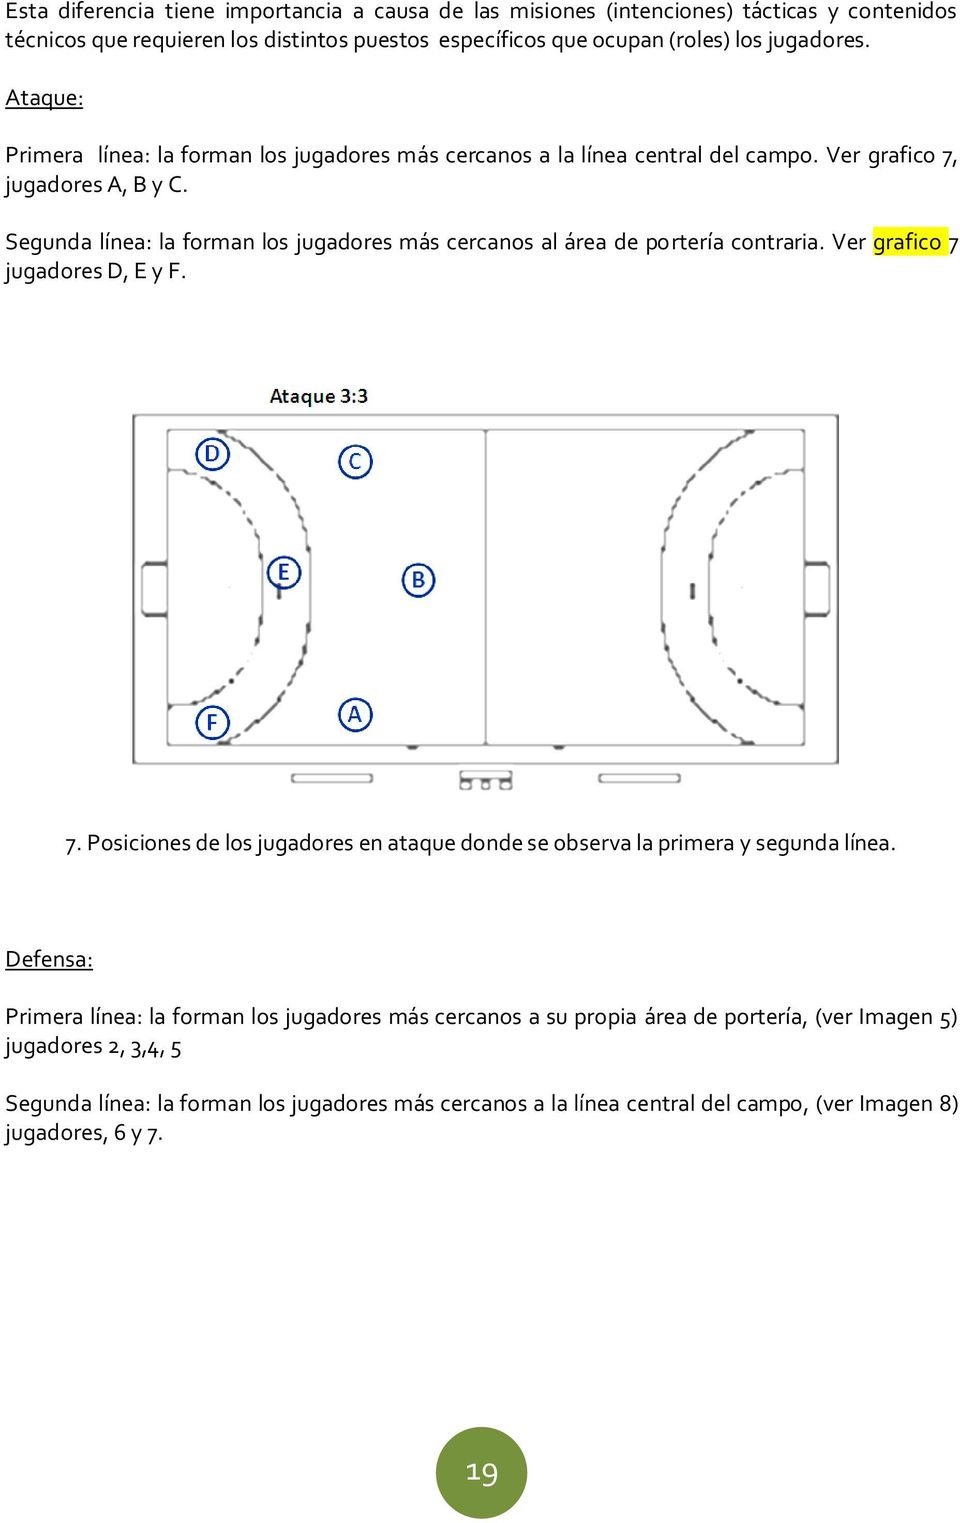 Segunda línea: la forman los jugadores más cercanos al área de portería contraria. Ver grafico 7 jugadores D, E y F. 7. Posiciones de los jugadores en ataque donde se observa la primera y segunda línea.